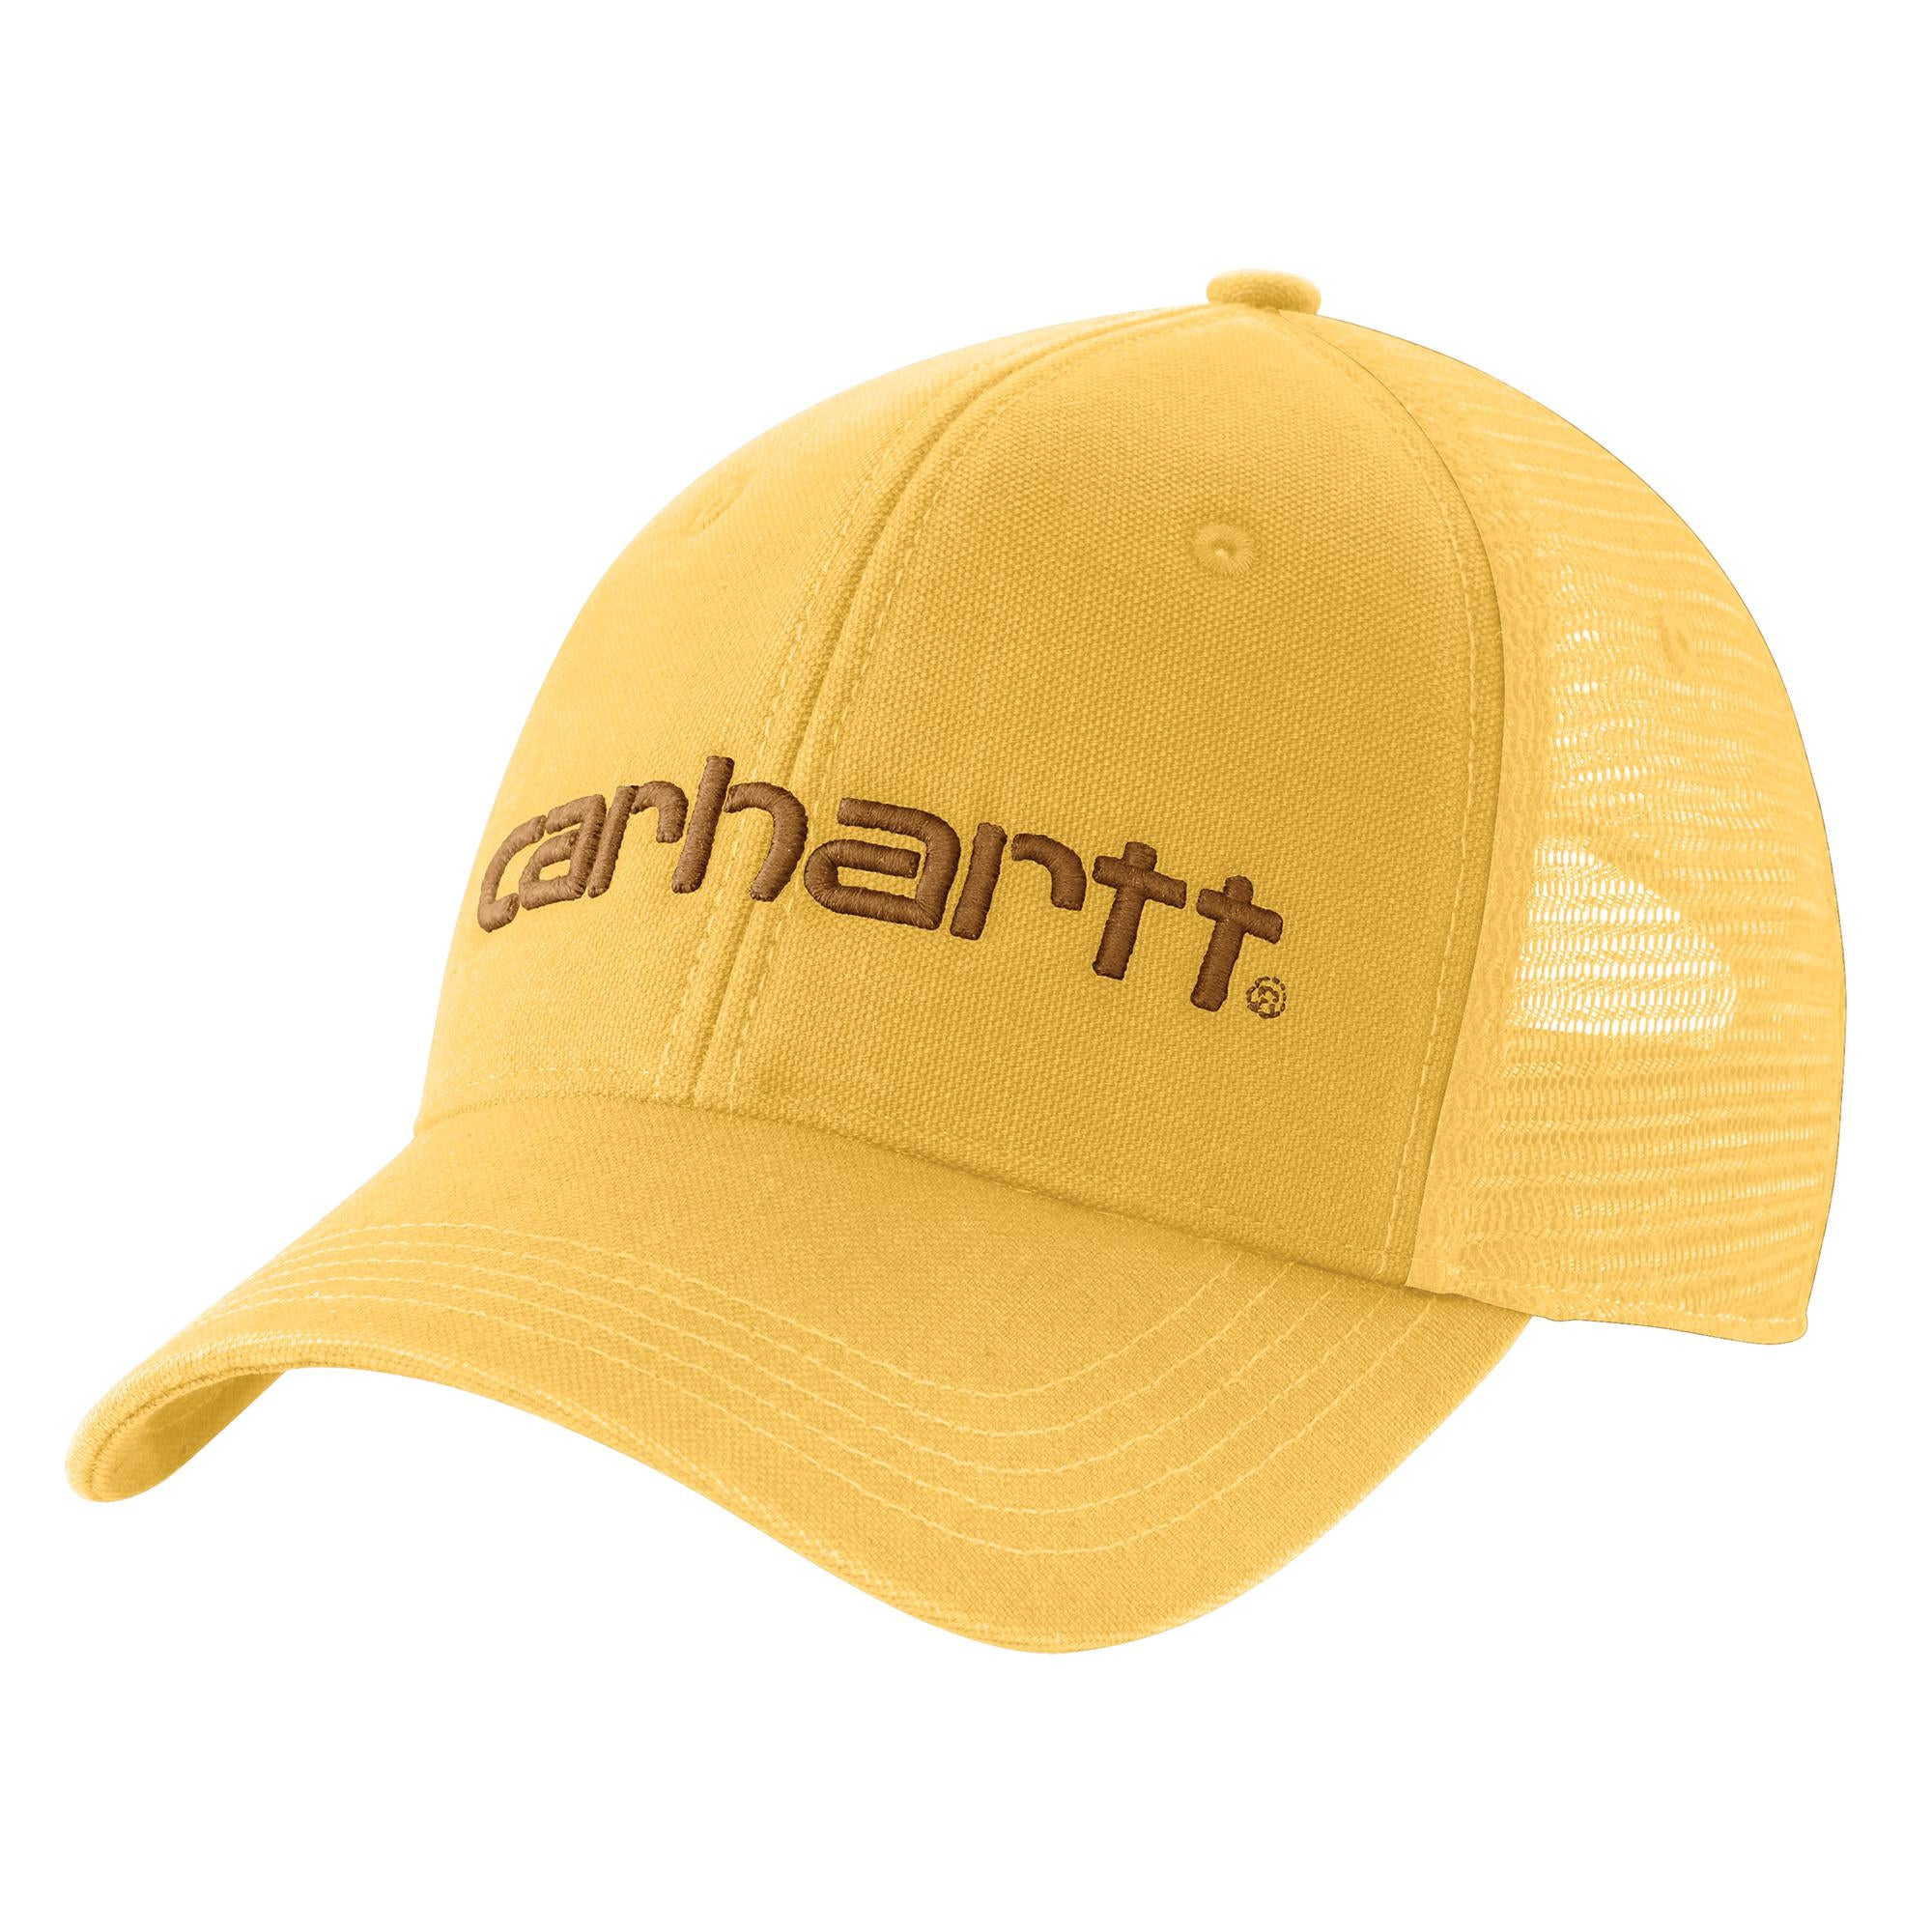 Carhartt Men's Canvas Mesh-Back Cap